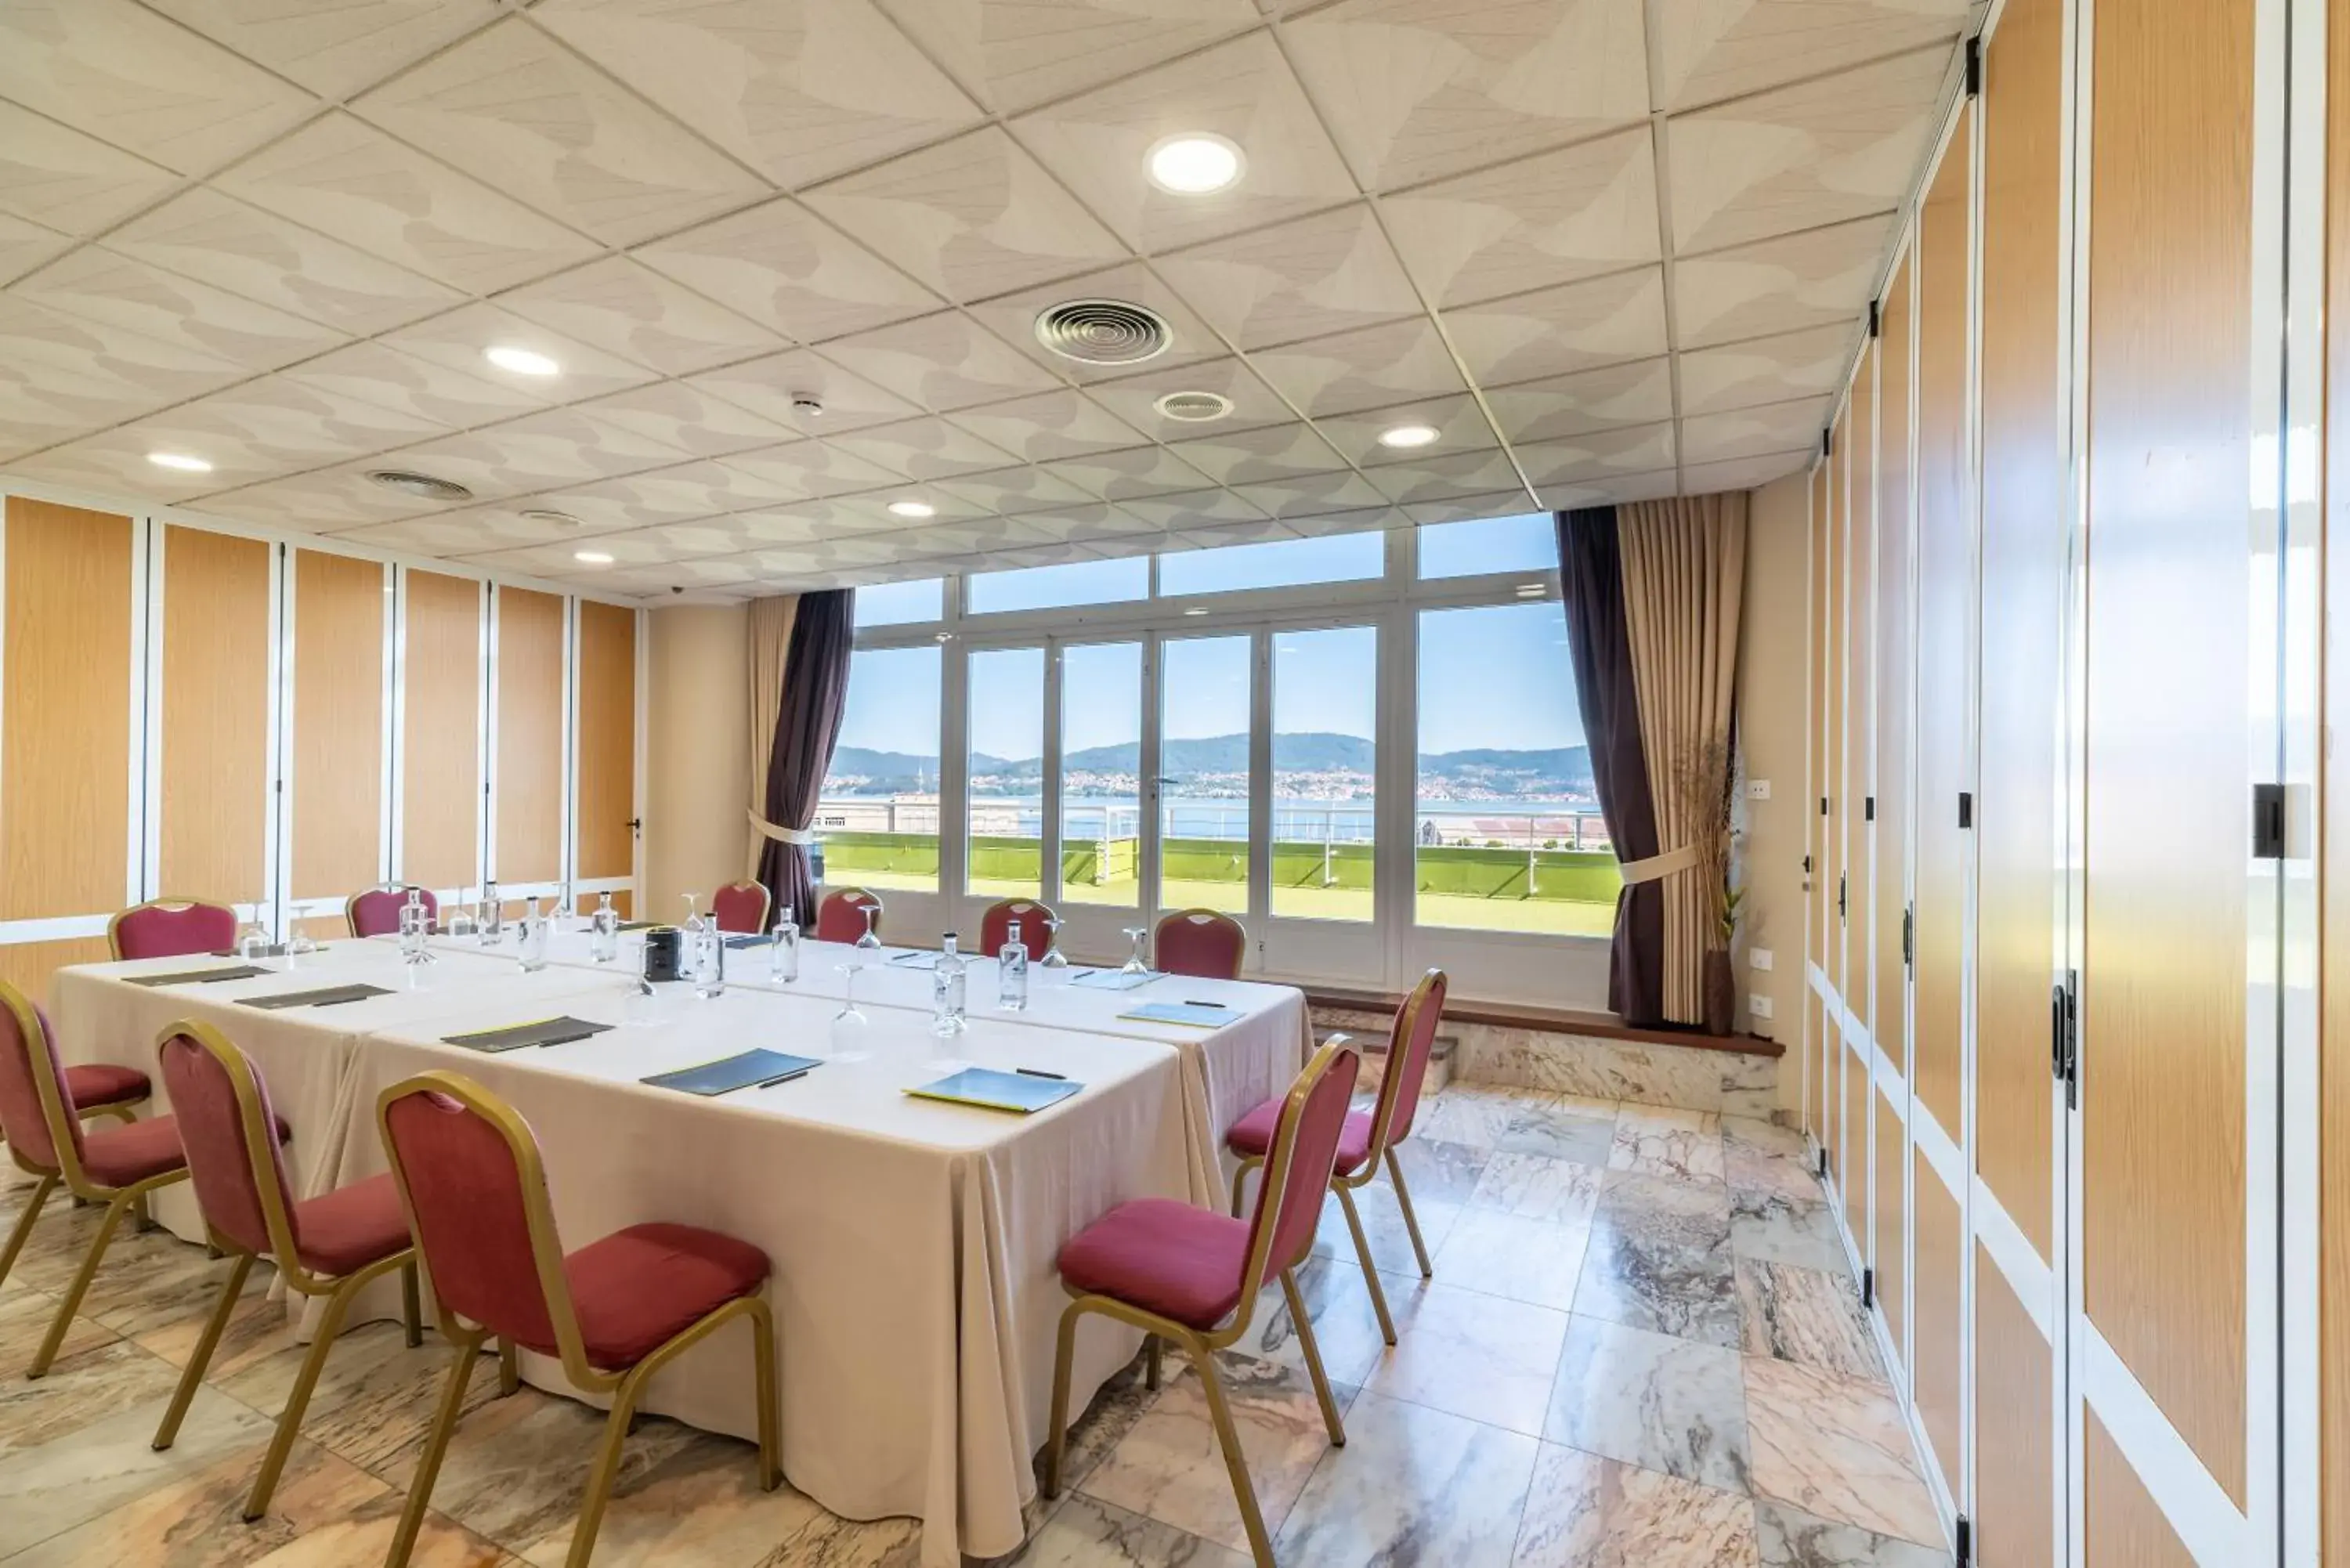 Meeting/conference room in Sercotel Hotel Bahia de Vigo